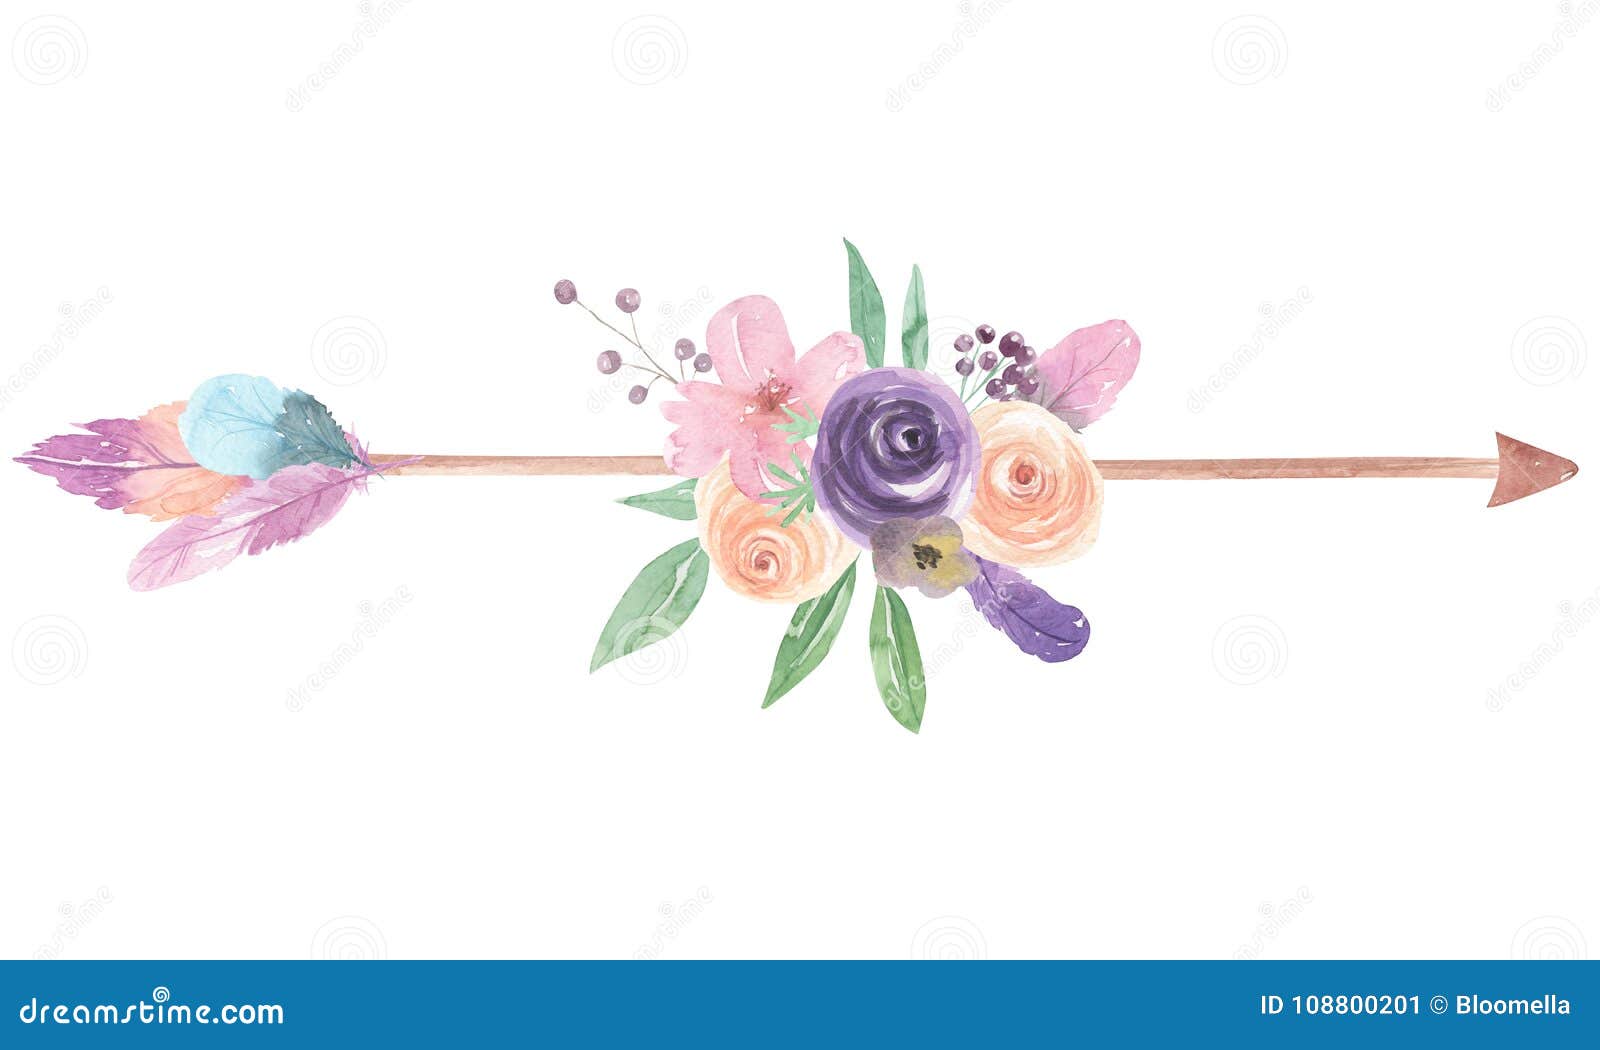 el-ramo-pintado-floral-de-las-flores-fle